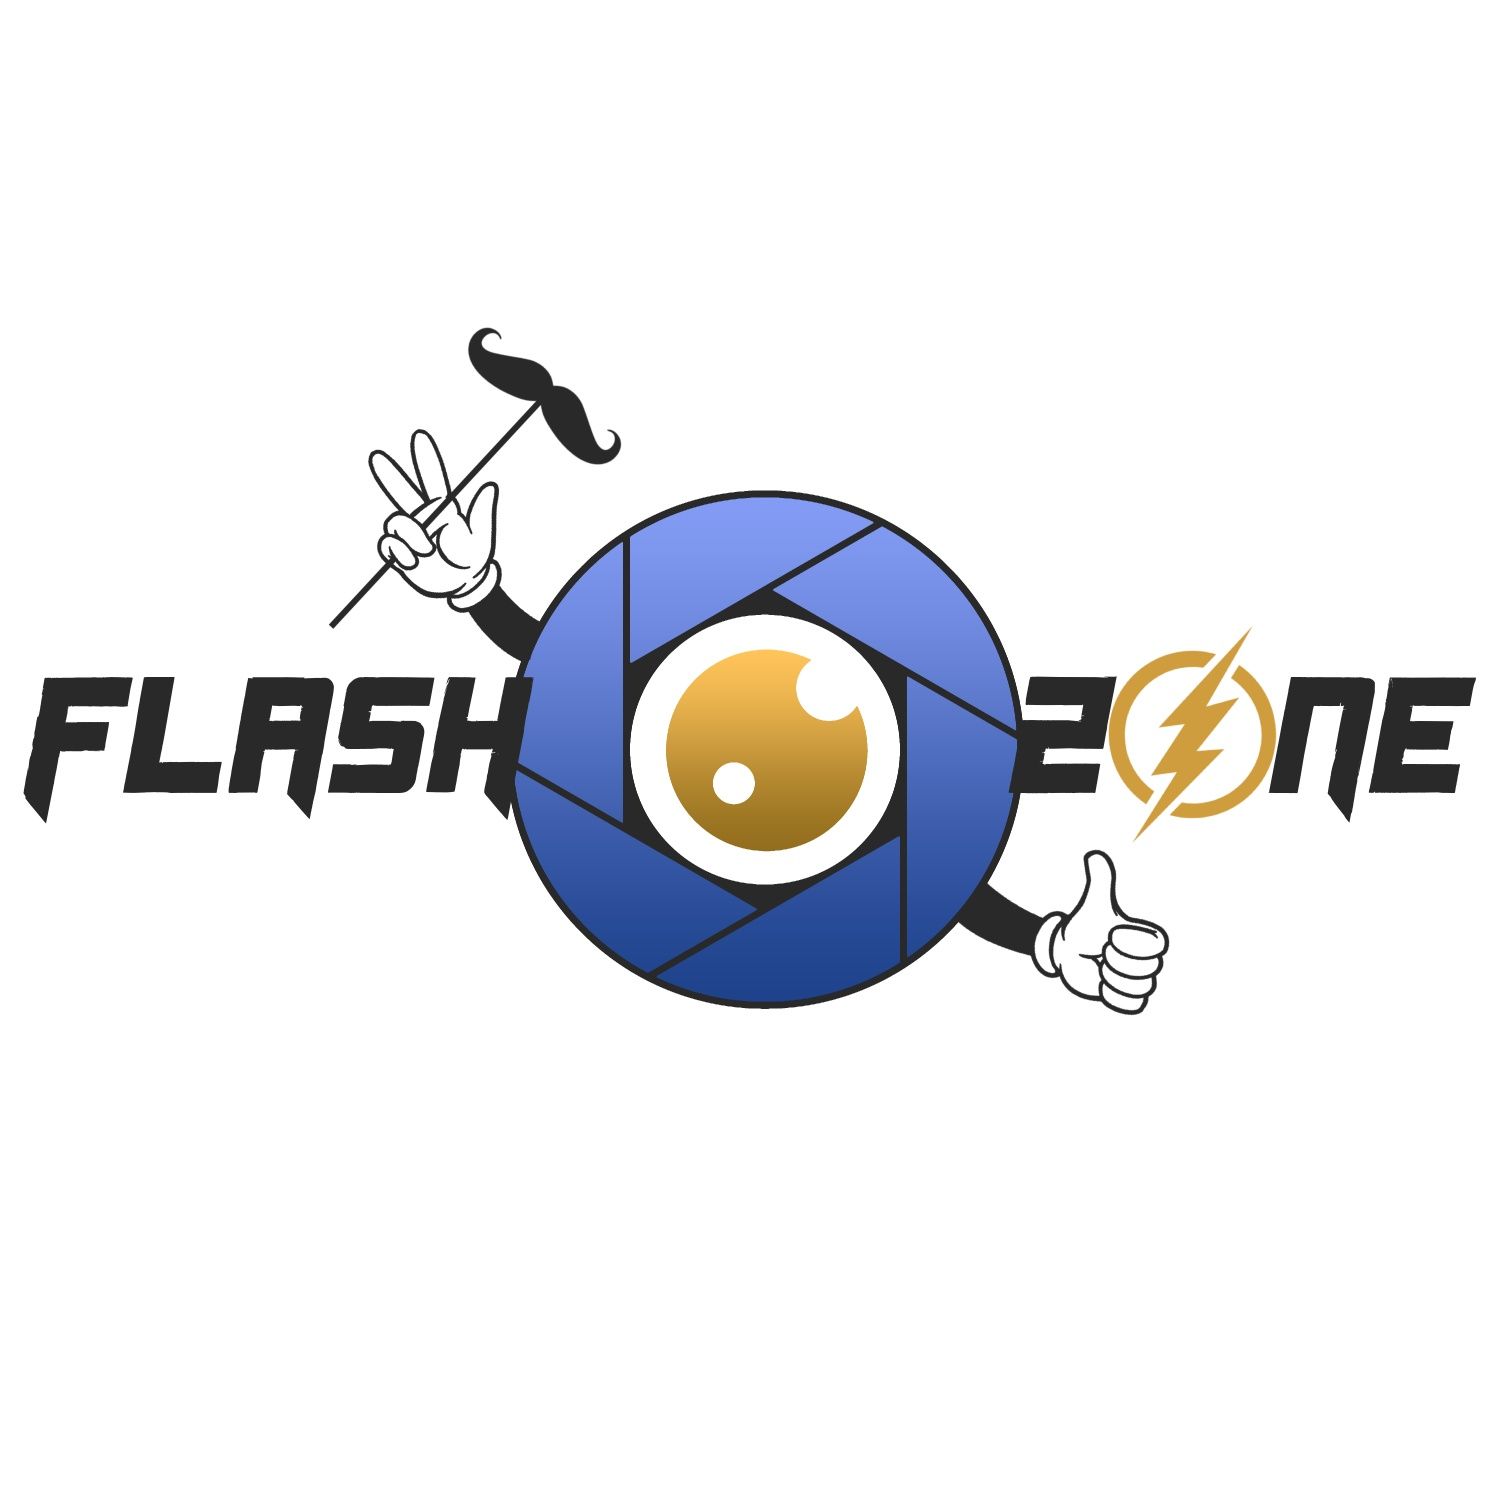 Flash Zone - fotobudka z kabiną led, telefon życzeń, aparat instax